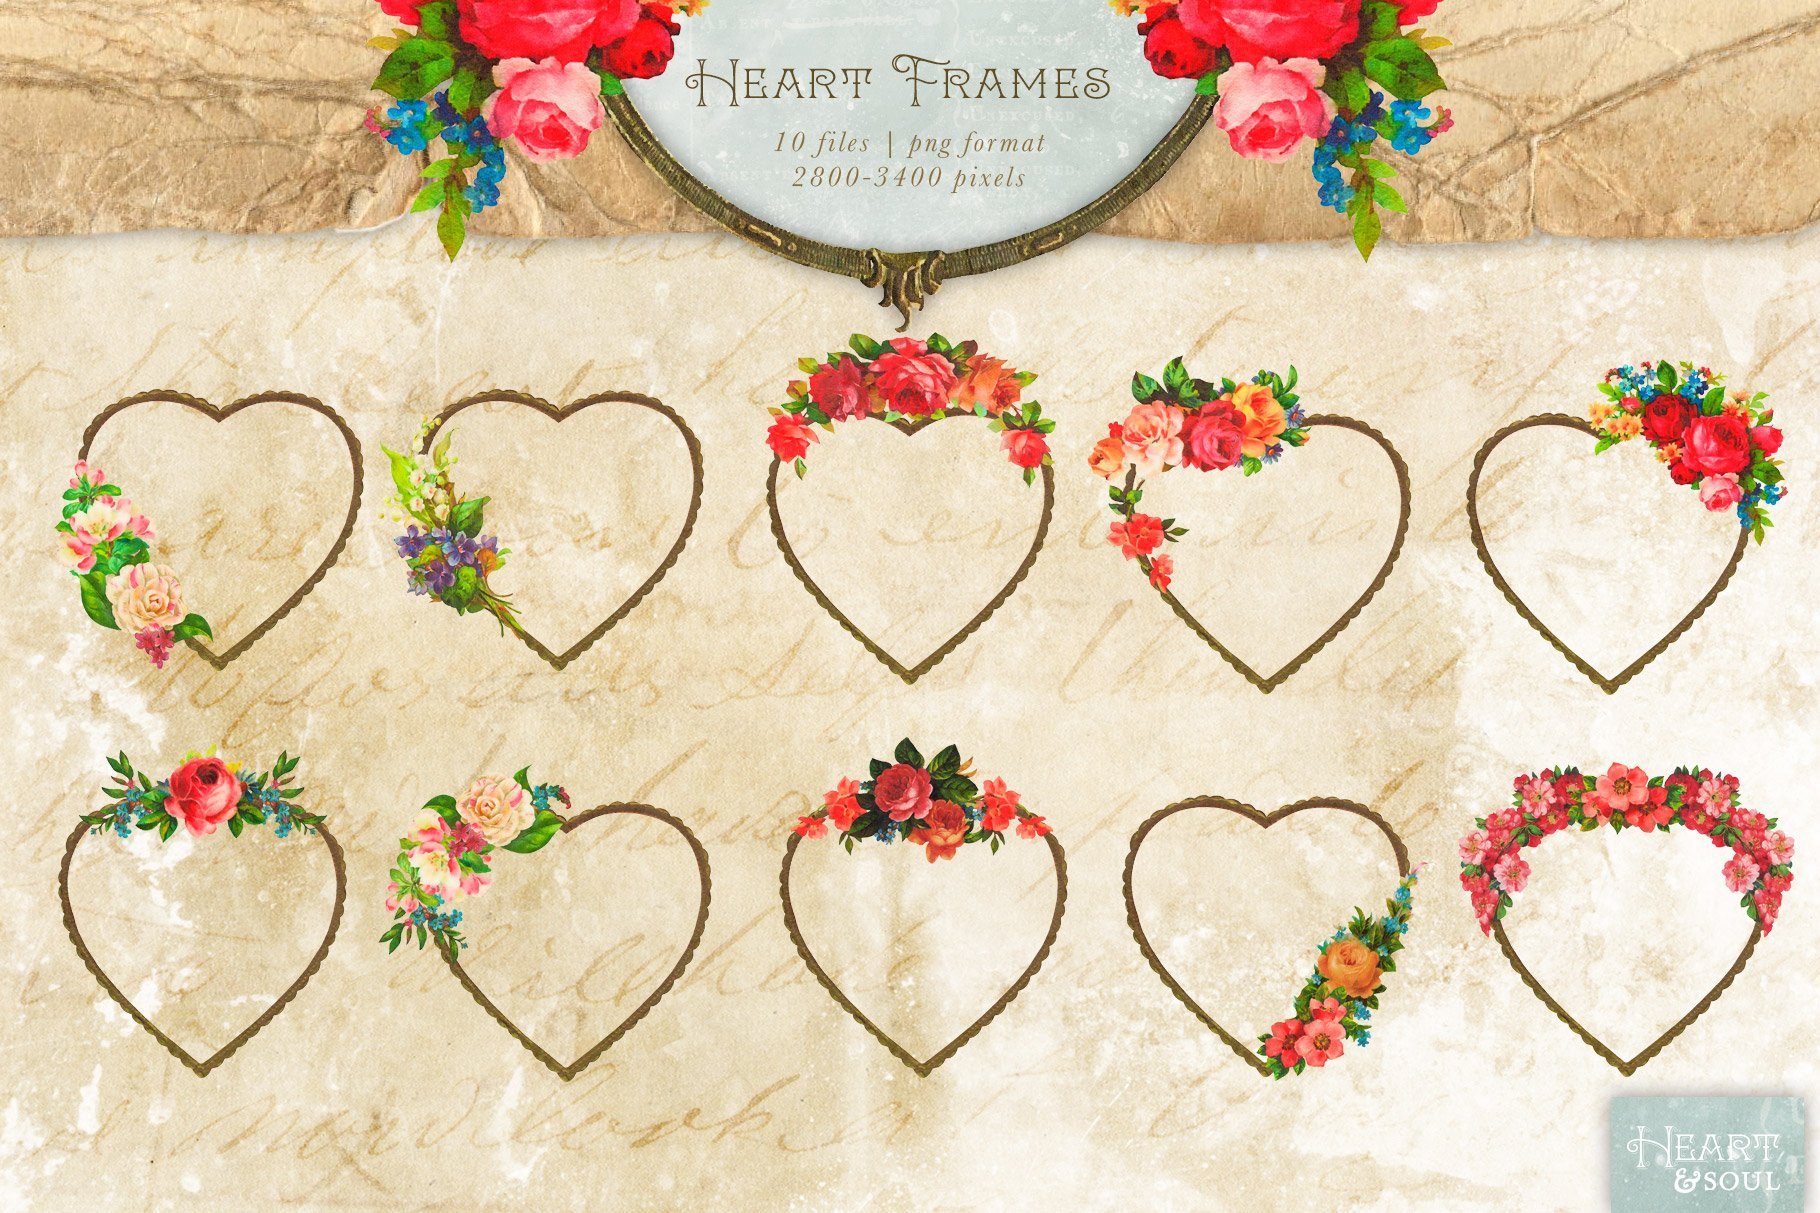 Heart & Soul - Flowers & Frames Kit